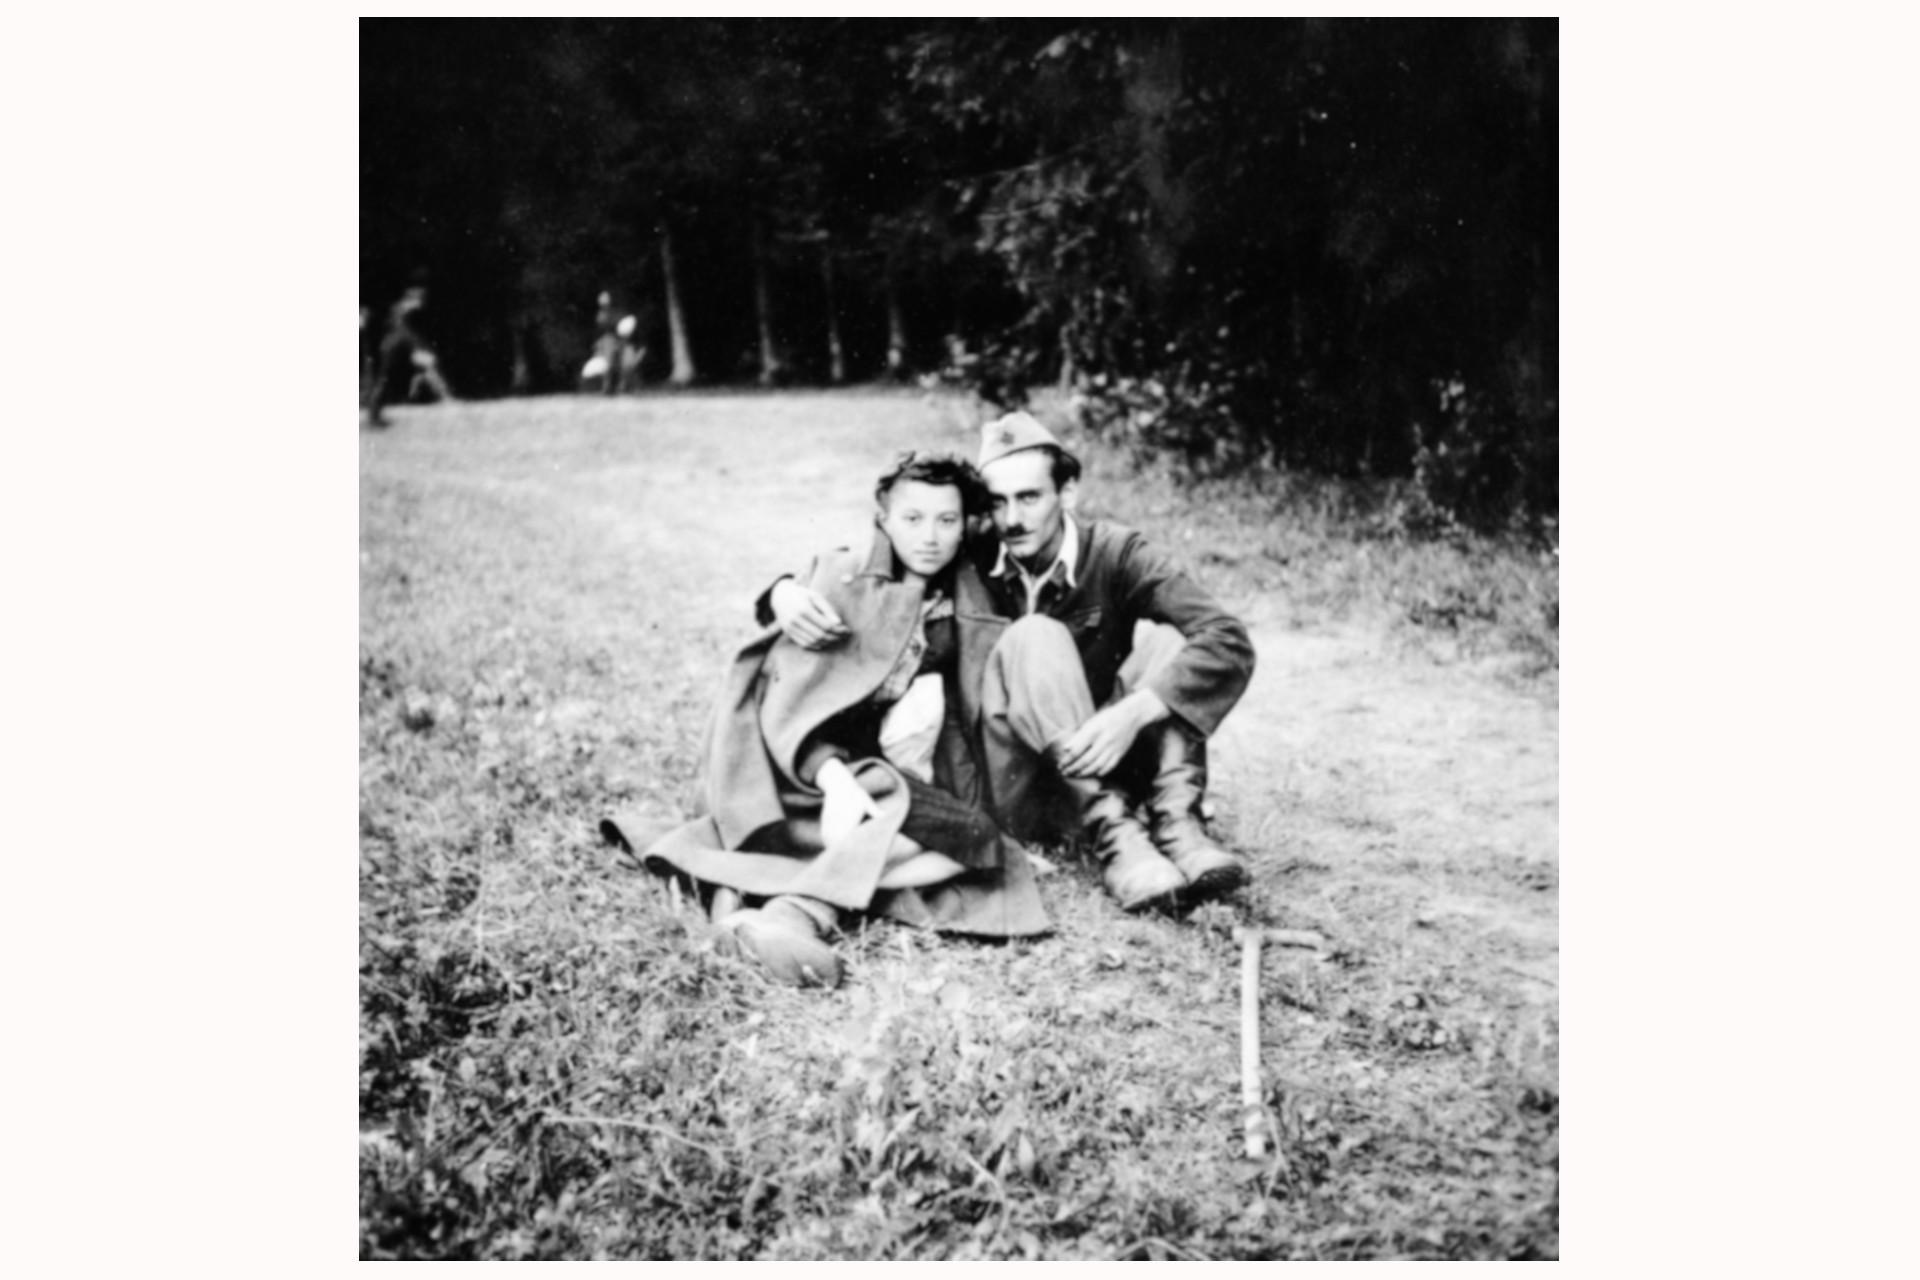 Das Dorf Ljutoč im Papuk-Gebirge, Kroatien, 1944; Heim für Menschen mit Behinderung der 4. Division der Partisanen. Foto von Miro Matašin. (Mit freundlicher Genehmigung des Museums für kroatische Geschichte). Rotes Licht macht auf einige Partisanenfotografen aufmerksam, die bisher noch nie genannt wurden, etwa den kroatischen Fotografen Matašin, der sein gesamtes Fotolabor mitnahm, als er sich den Partisanen anschloss.